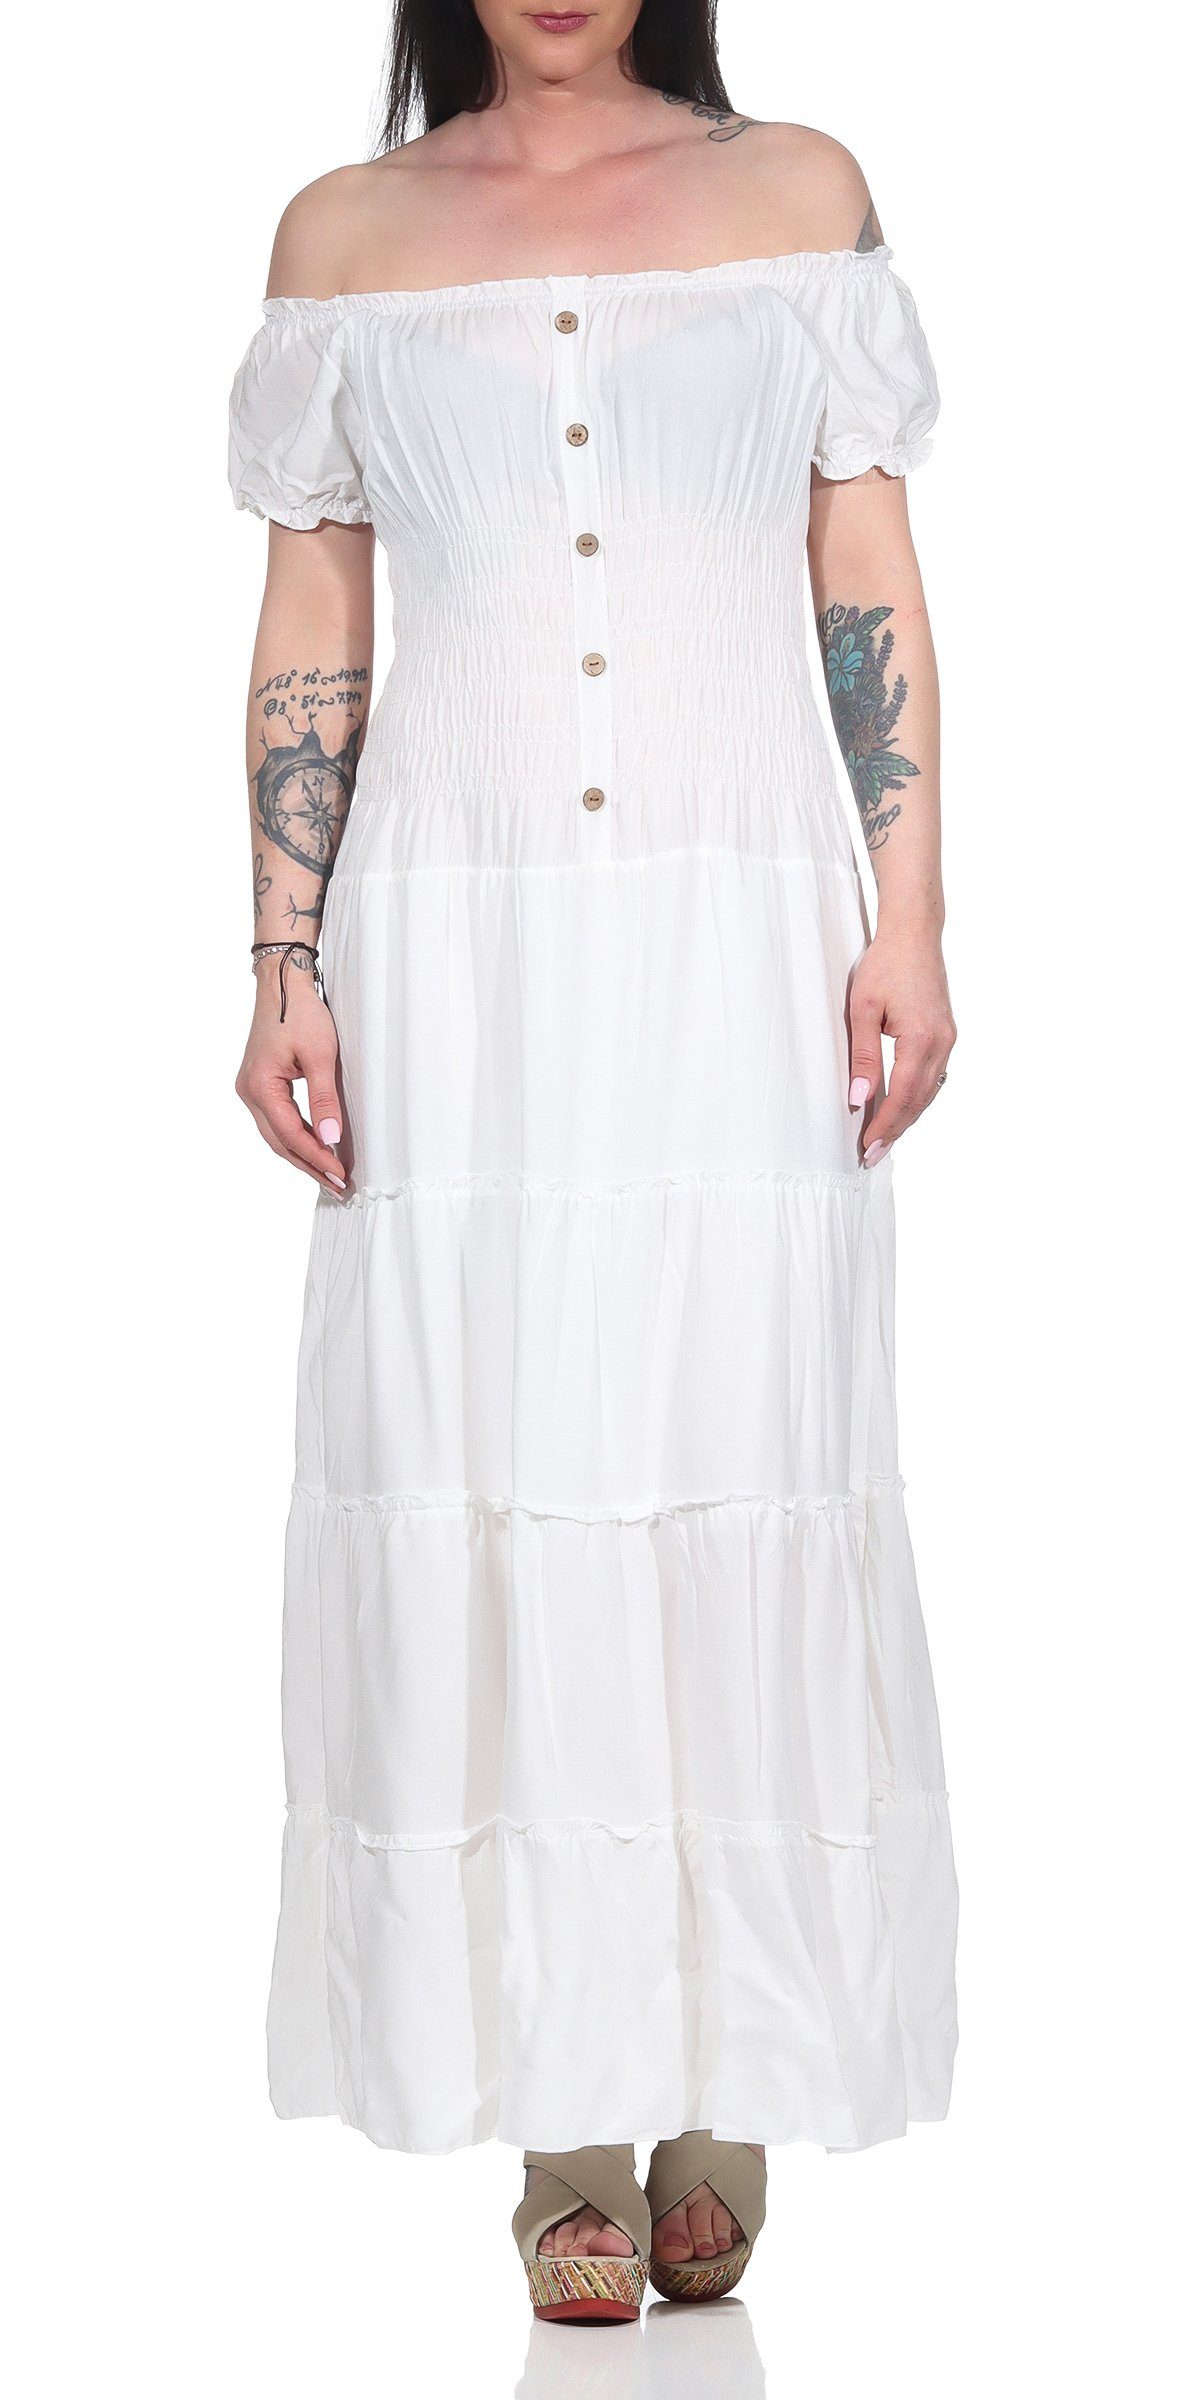 Aurela Damenmode Strandkleid Kleider Damen elegant Sommer Kleider lang  einfarbig Gesamtlänge: 132 - 135cm, Carmen- oder Rundhals Ausschnitt möglich